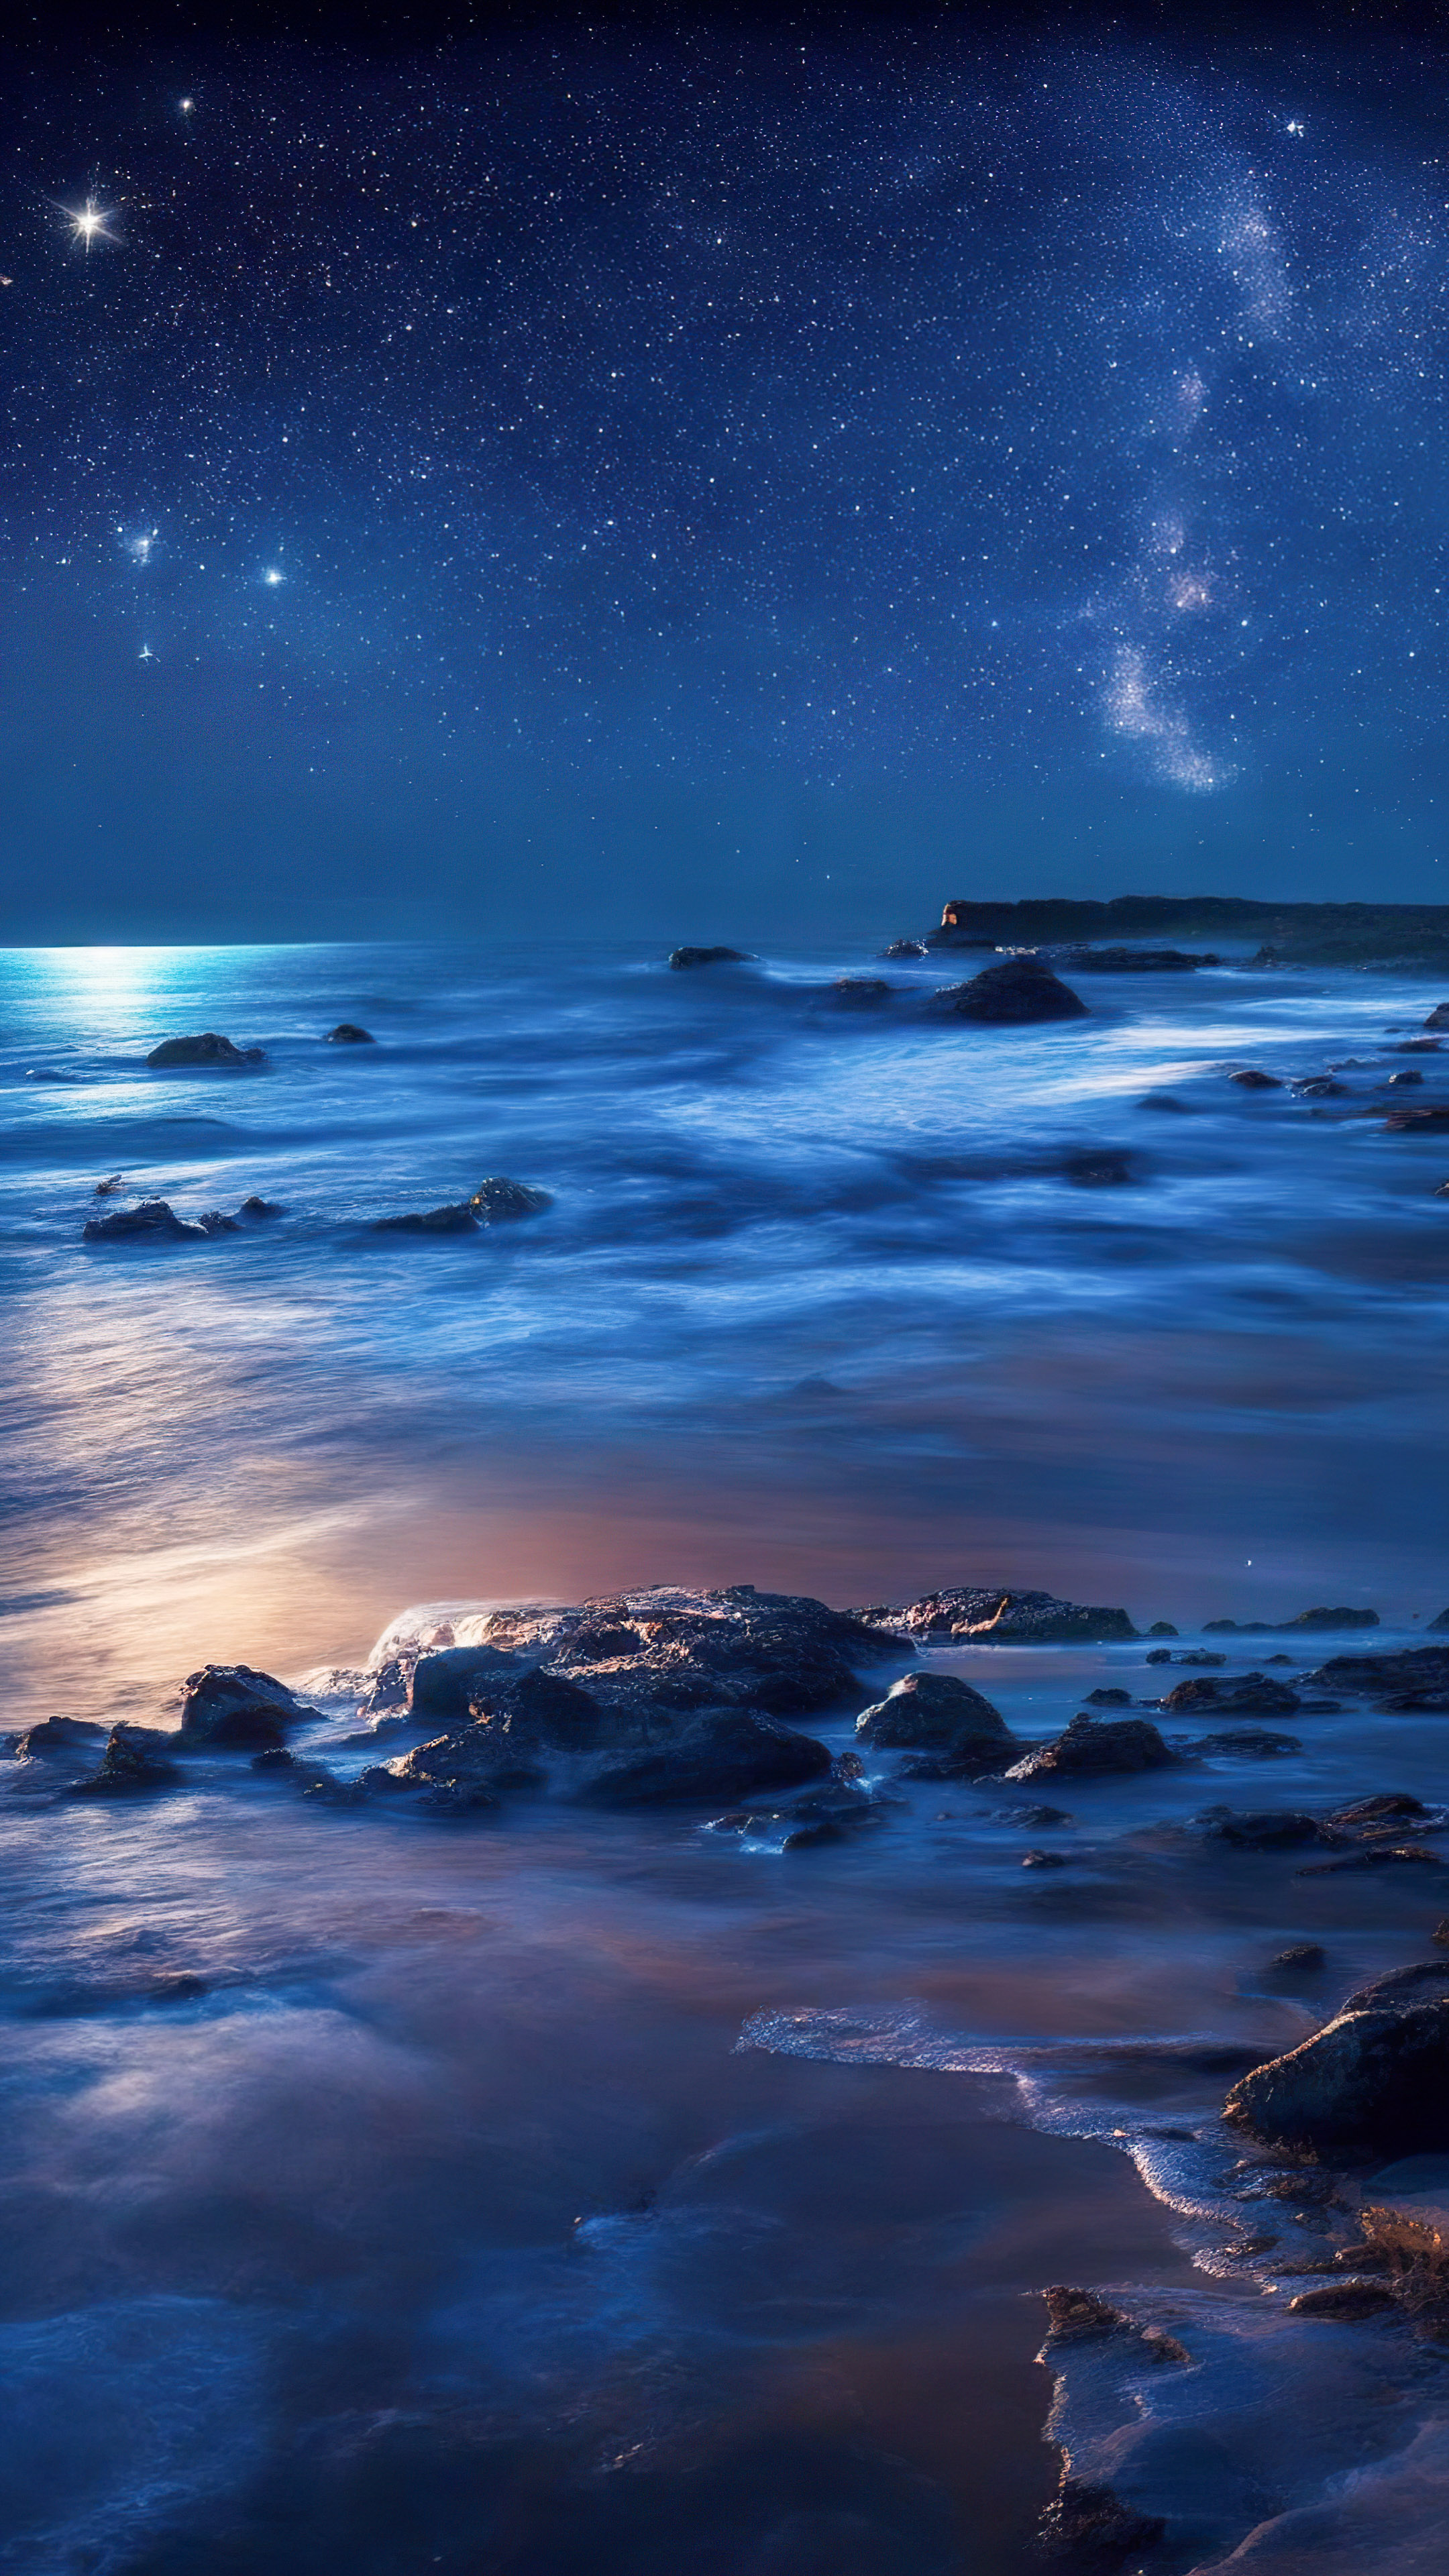 Vivez la sérénité de notre fond d'écran de nuit océanique, présentant une plage isolée la nuit où les vagues caressent le rivage sous une couverture d'étoiles scintillantes.